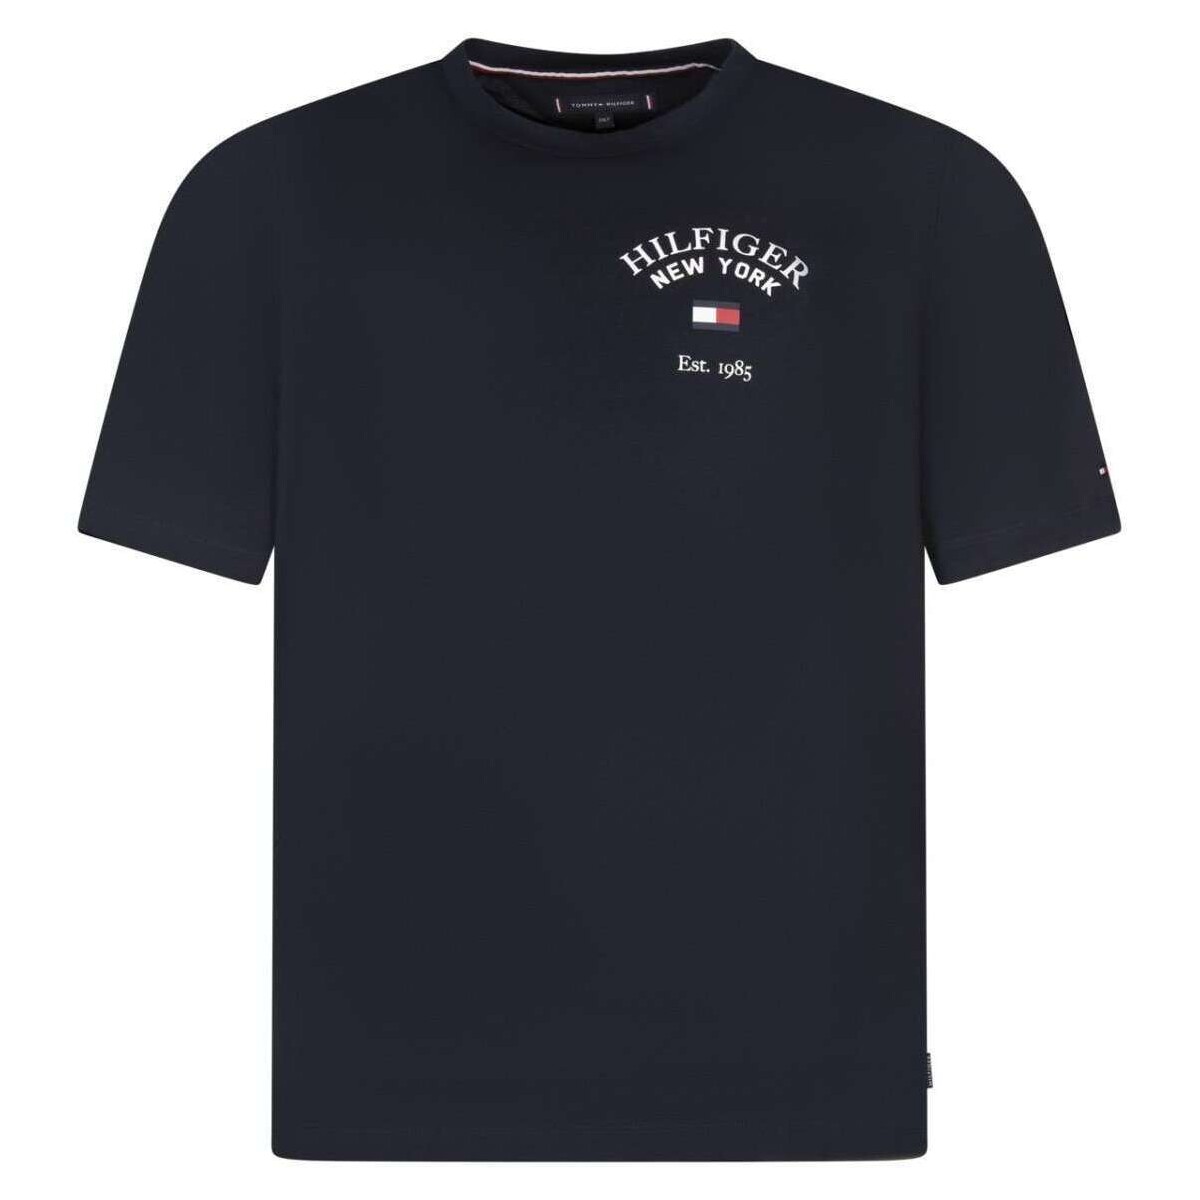 Vêtements Homme T-shirts manches courtes Tommy Hilfiger 162918VTPE24 Marine